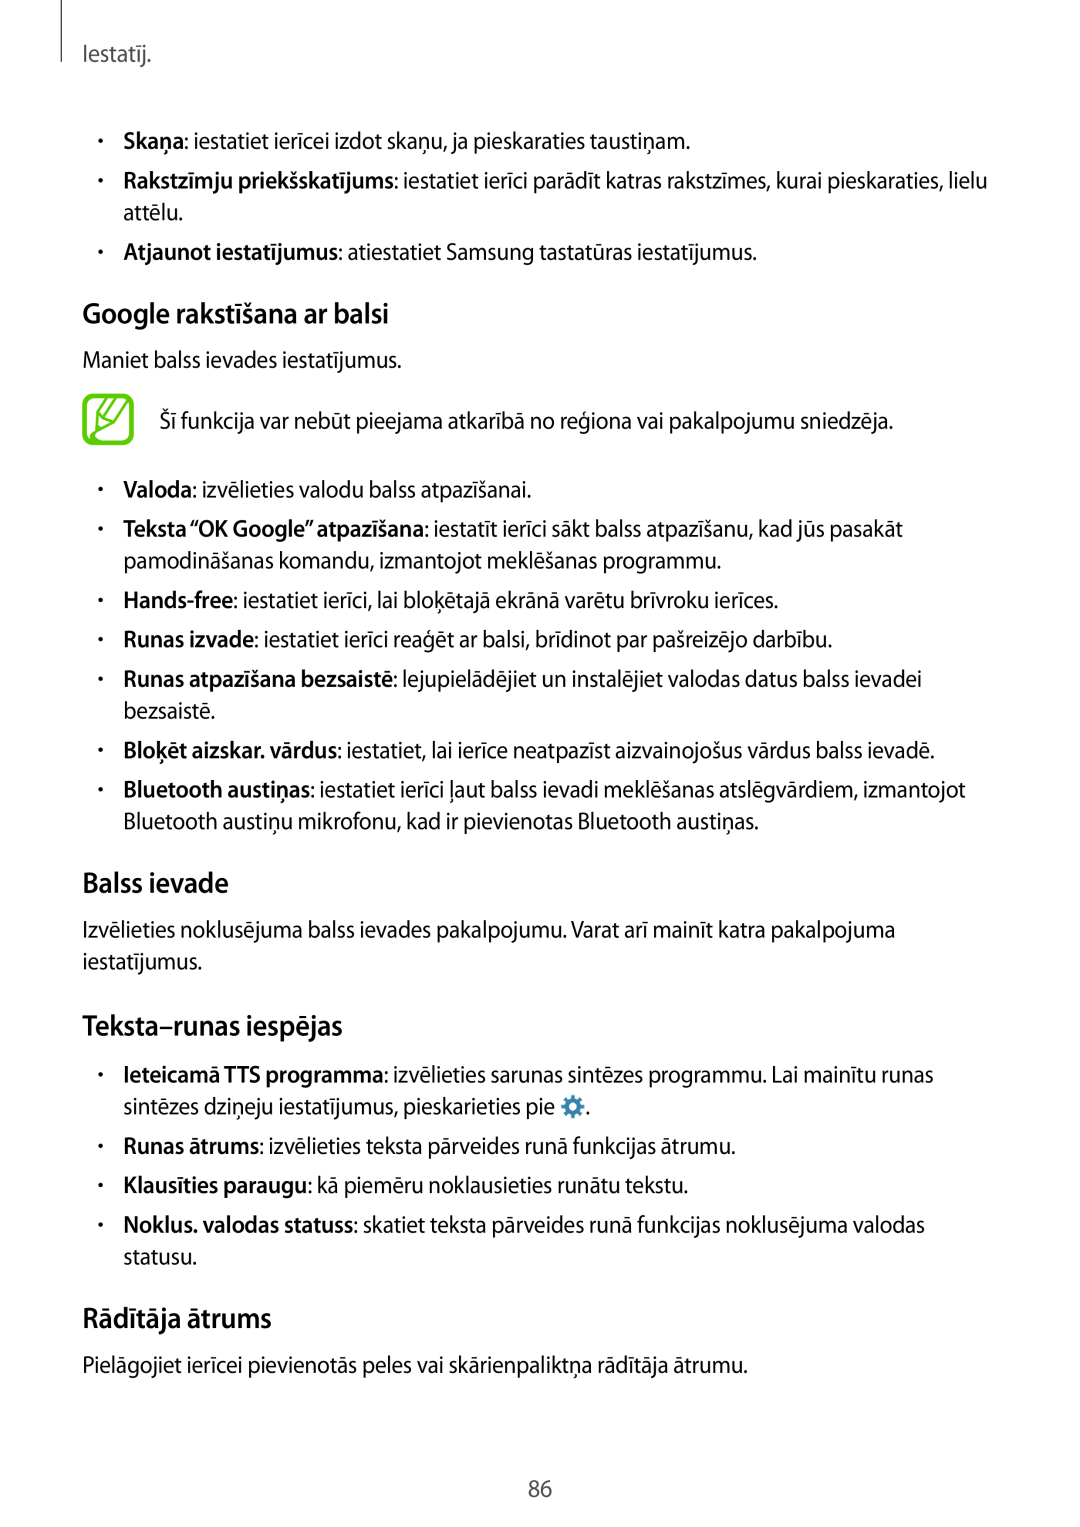 Samsung SM-G531FZDASEB manual Google rakstīšana ar balsi, Balss ievade, Teksta-runas iespējas, Rādītāja ātrums, Iestatīj 